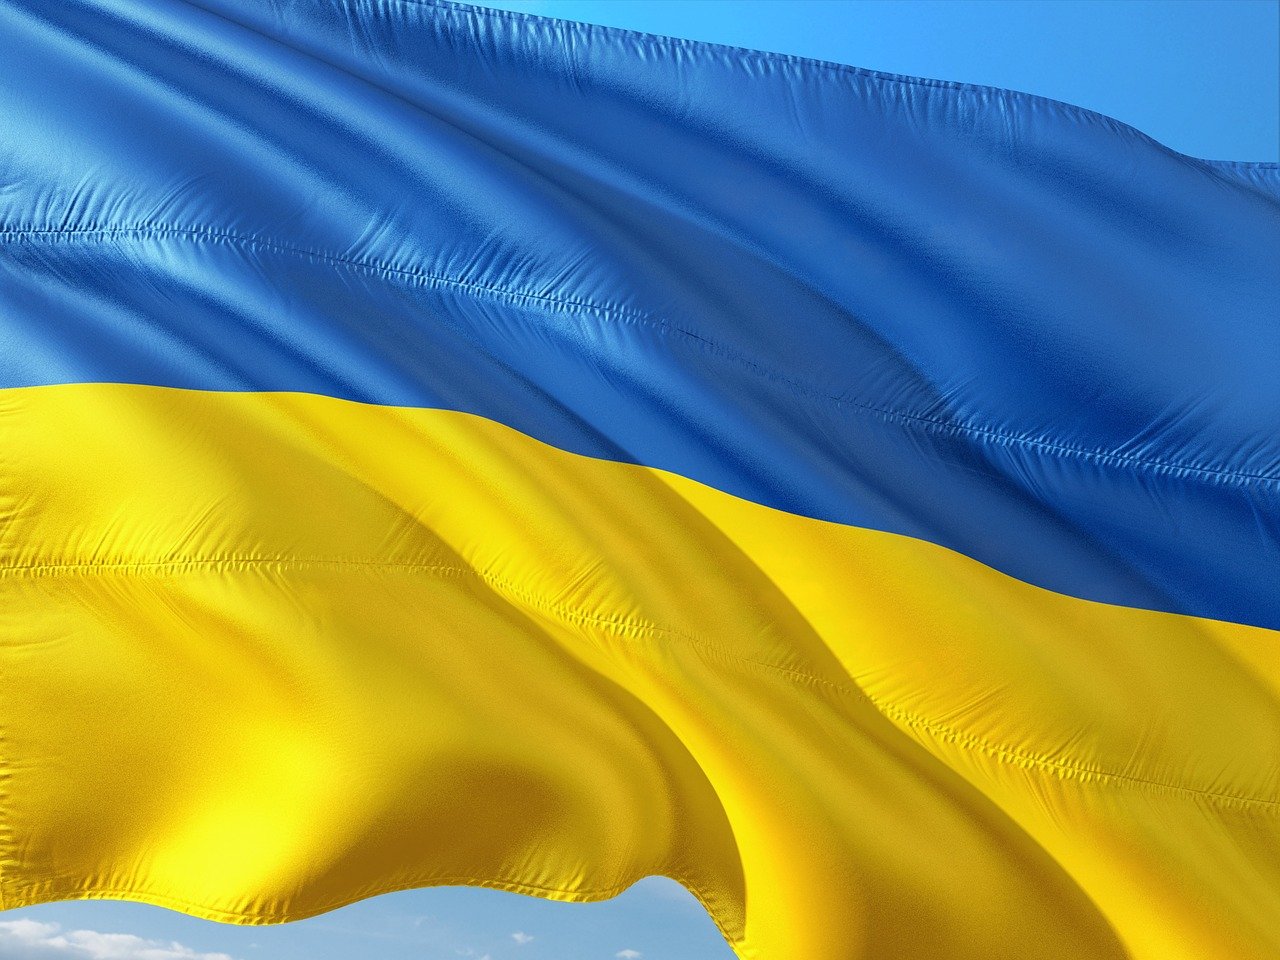 Η Ουάσινγκτον και οι σύμμαχοί τους συζητούν το ενδεχόμενο εκπαίδευσης Ουκρανών πιλότων